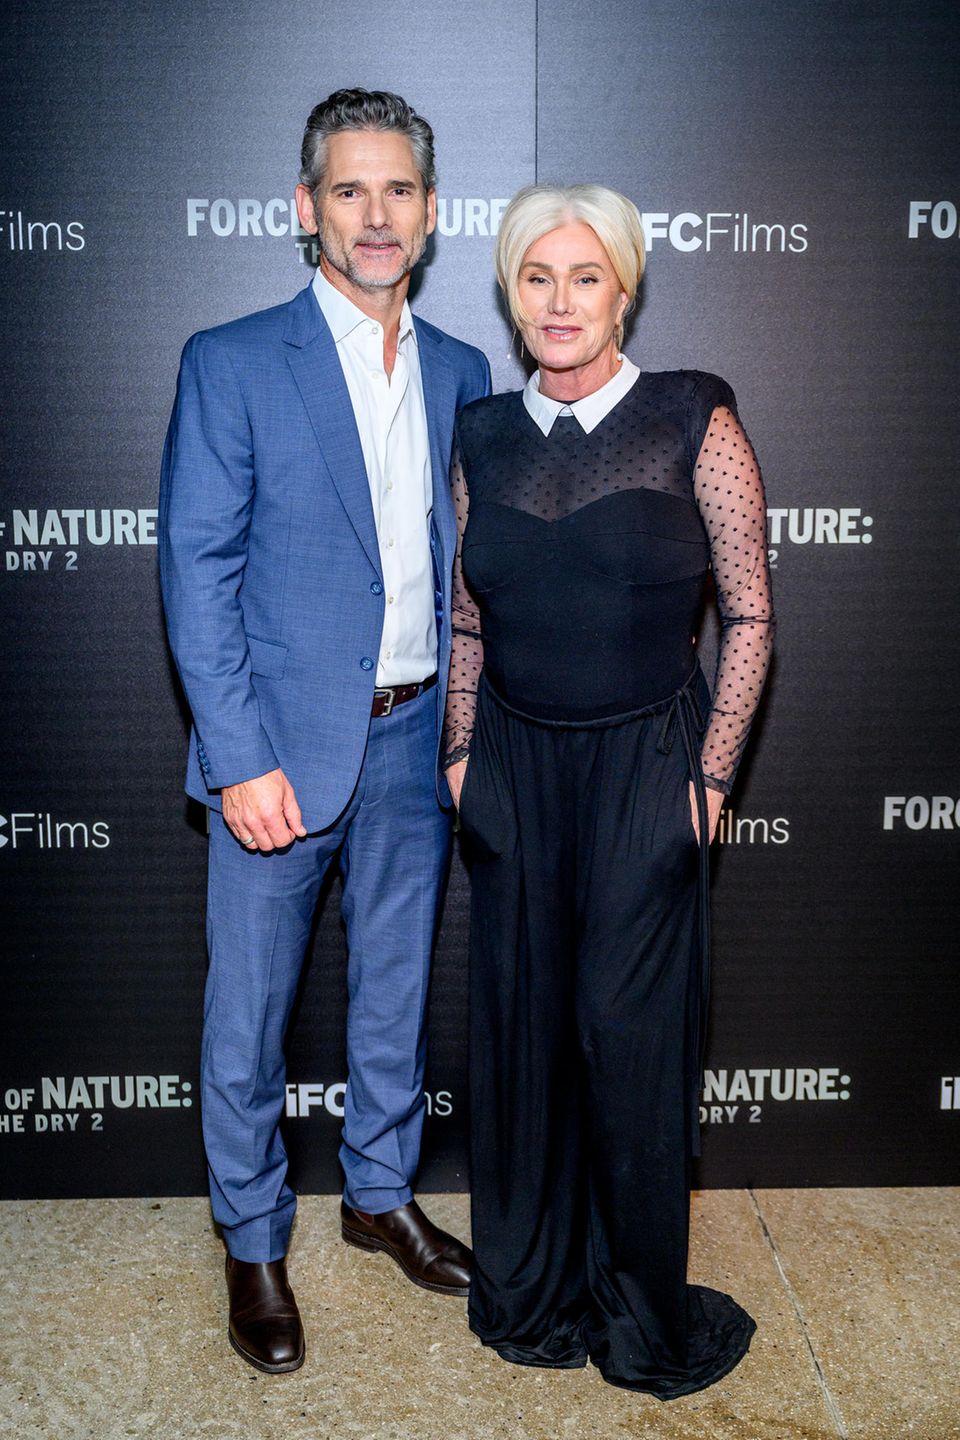 Deborra-Lee Furness promotet aktuell ihren neuen Film "Force of Nature: The Dry 2" – hier an der Seite von Schauspielkollege Eric Bana.